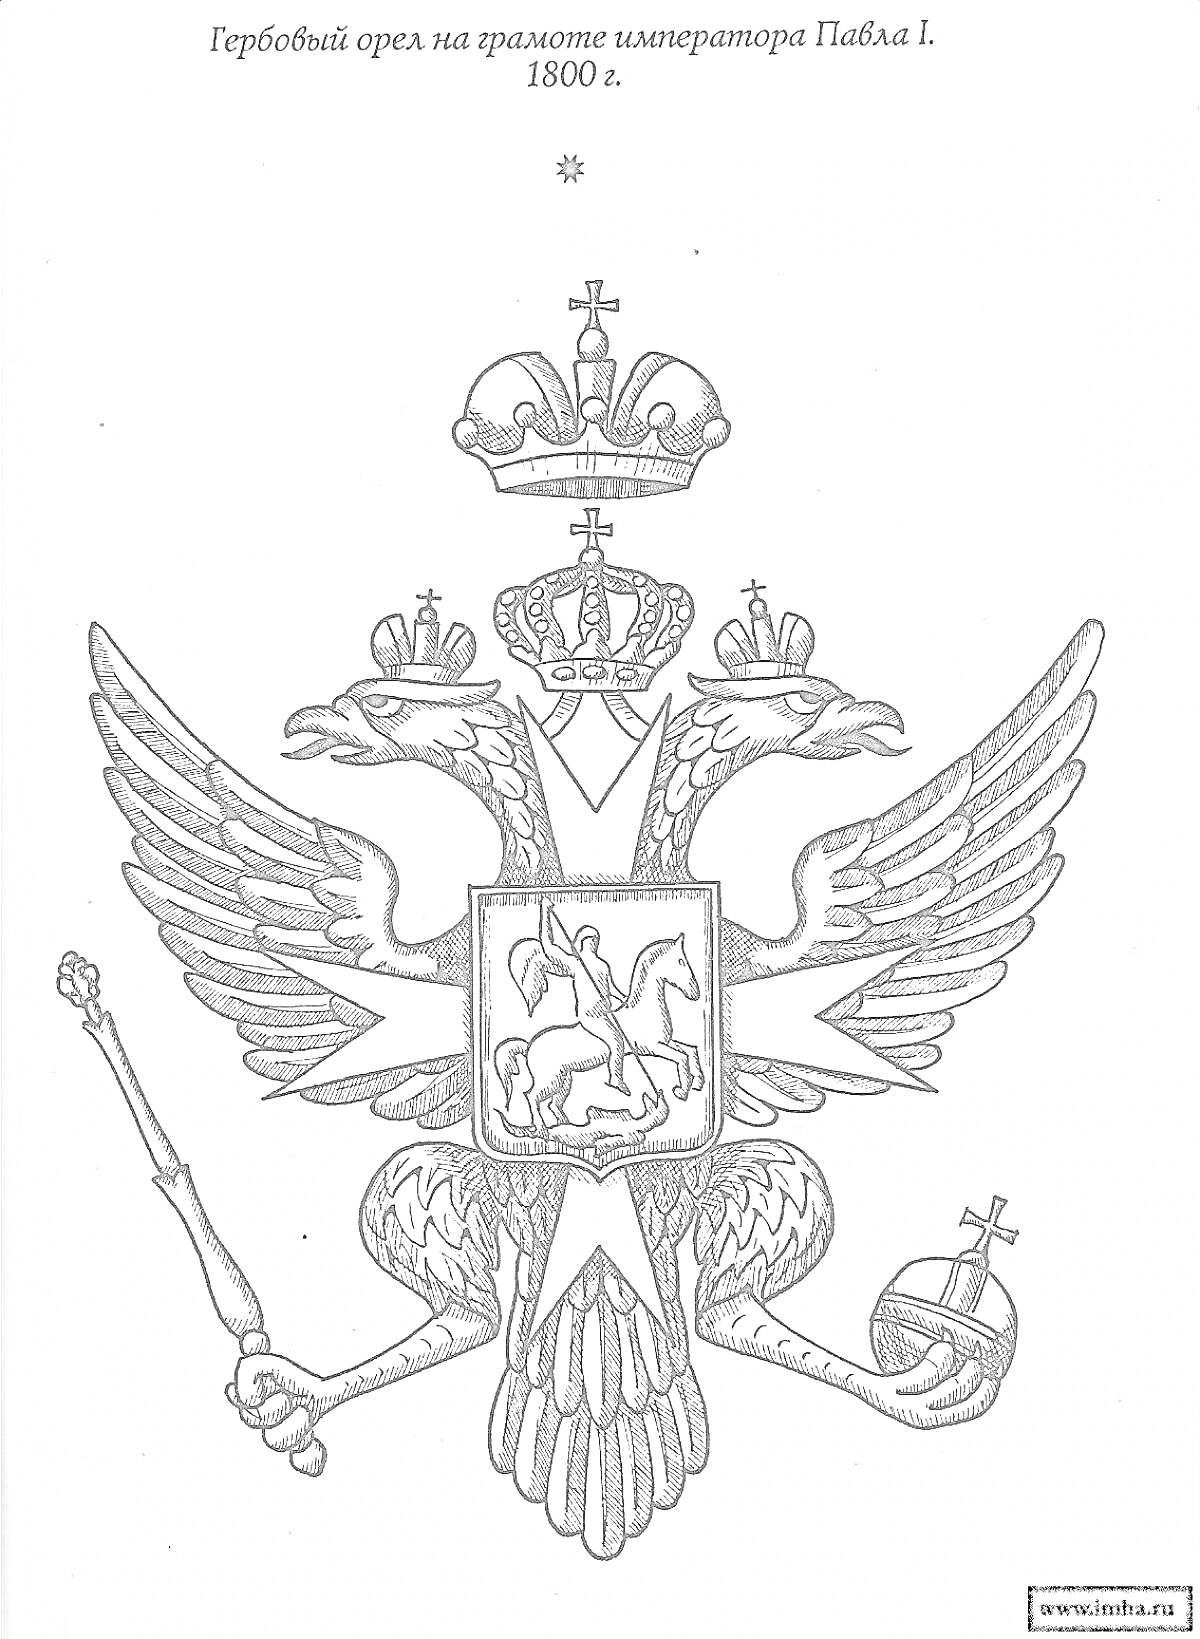 Гербовый орел на грамоте императора Павла I, 1800 г. Элементы: двуглавый орел, короны, держава, скипетр, всадник с копьем, змея